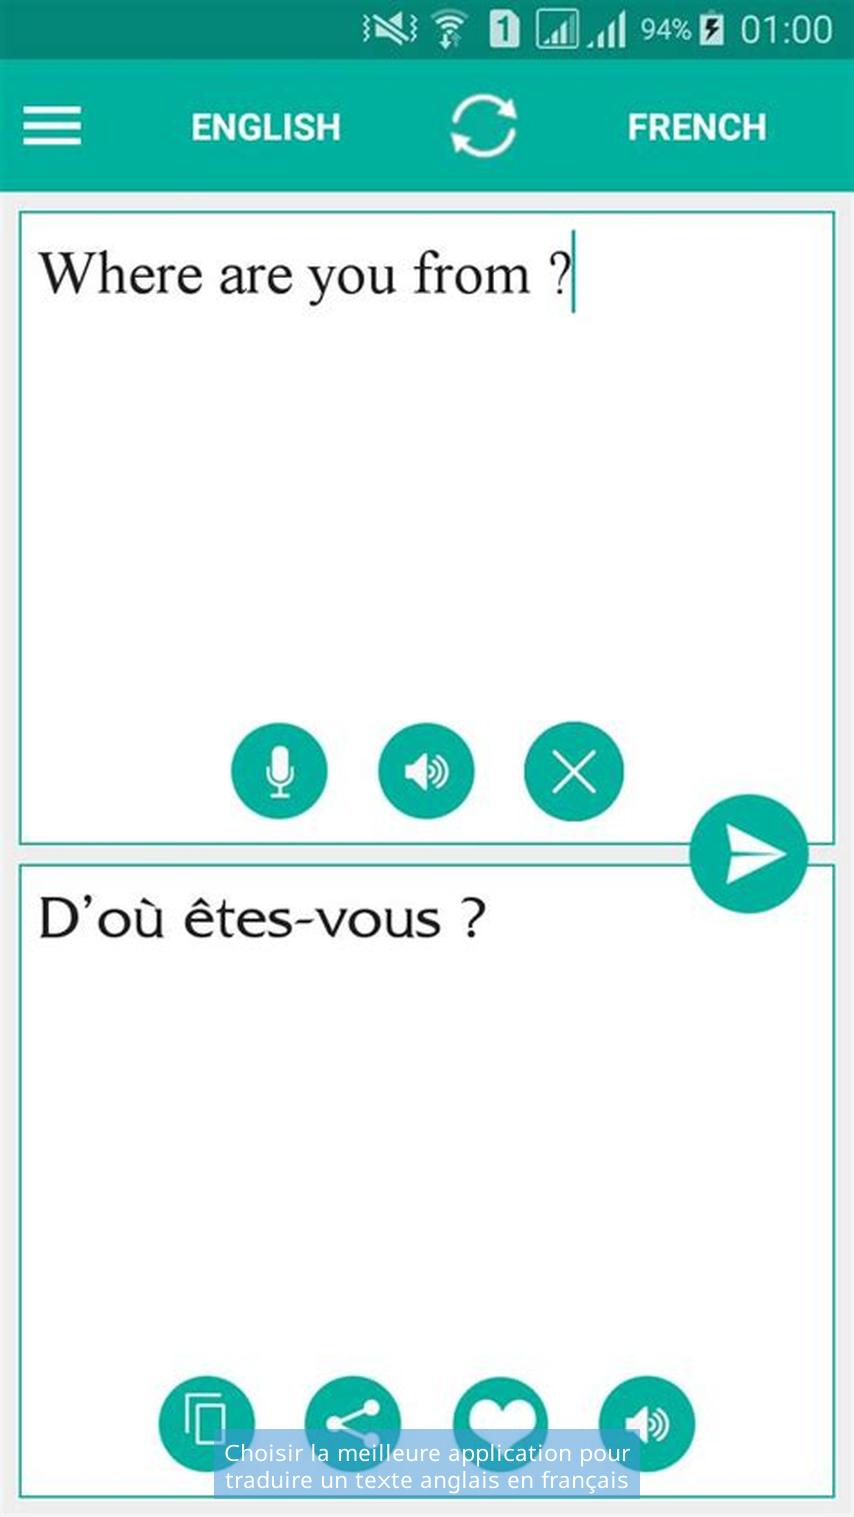 Choisir la meilleure application pour traduire un texte anglais en français